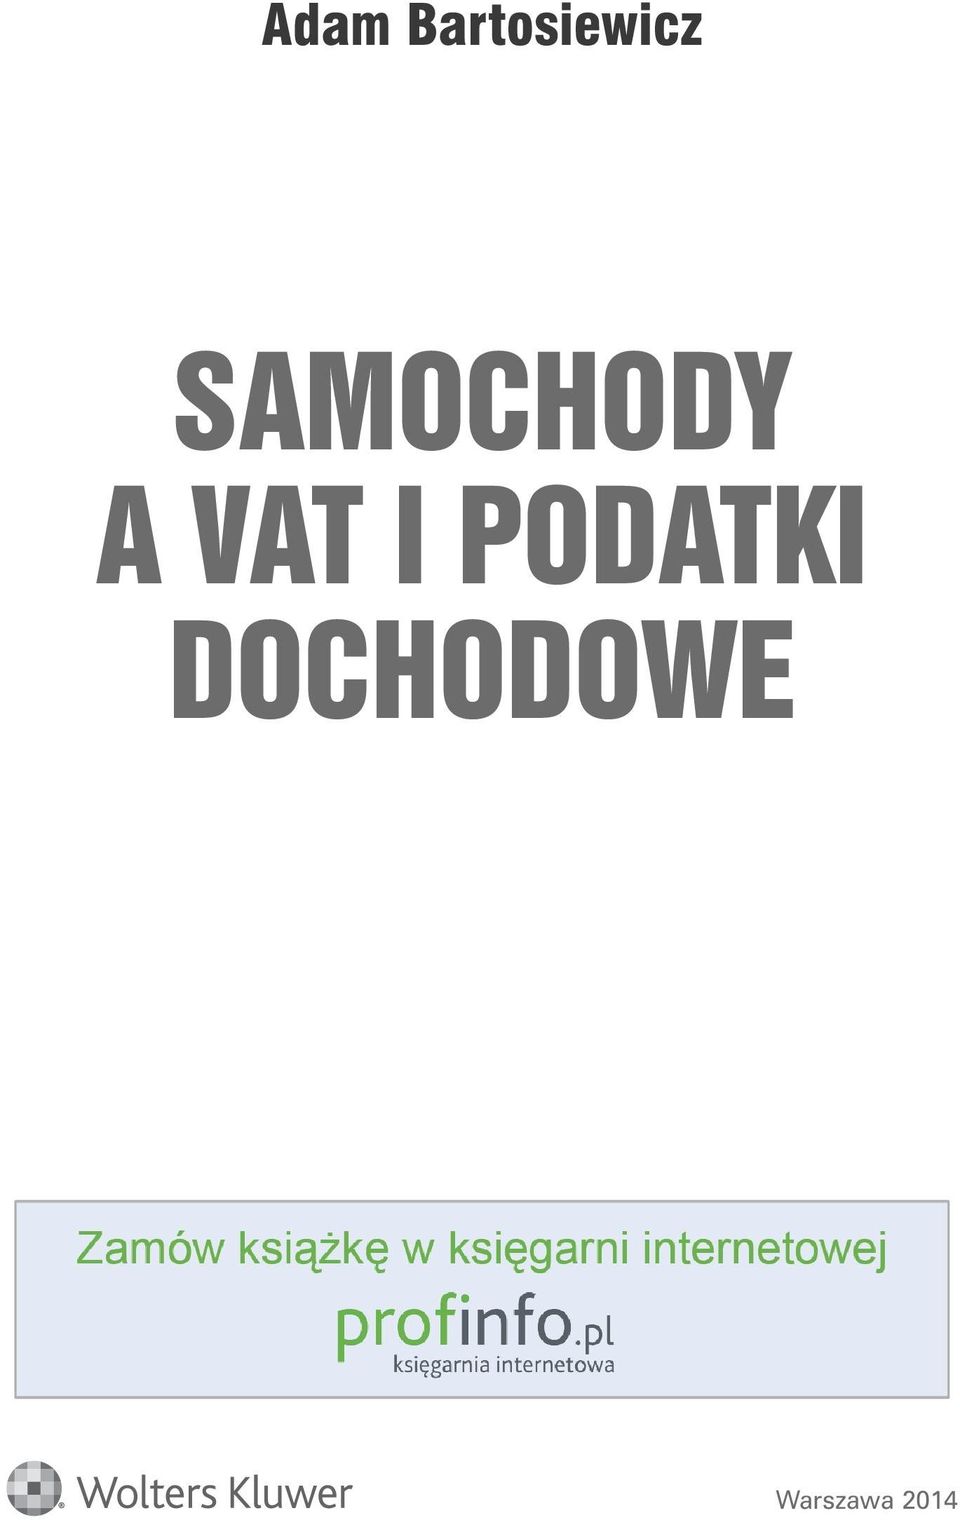 SAMOCHODY A VAT